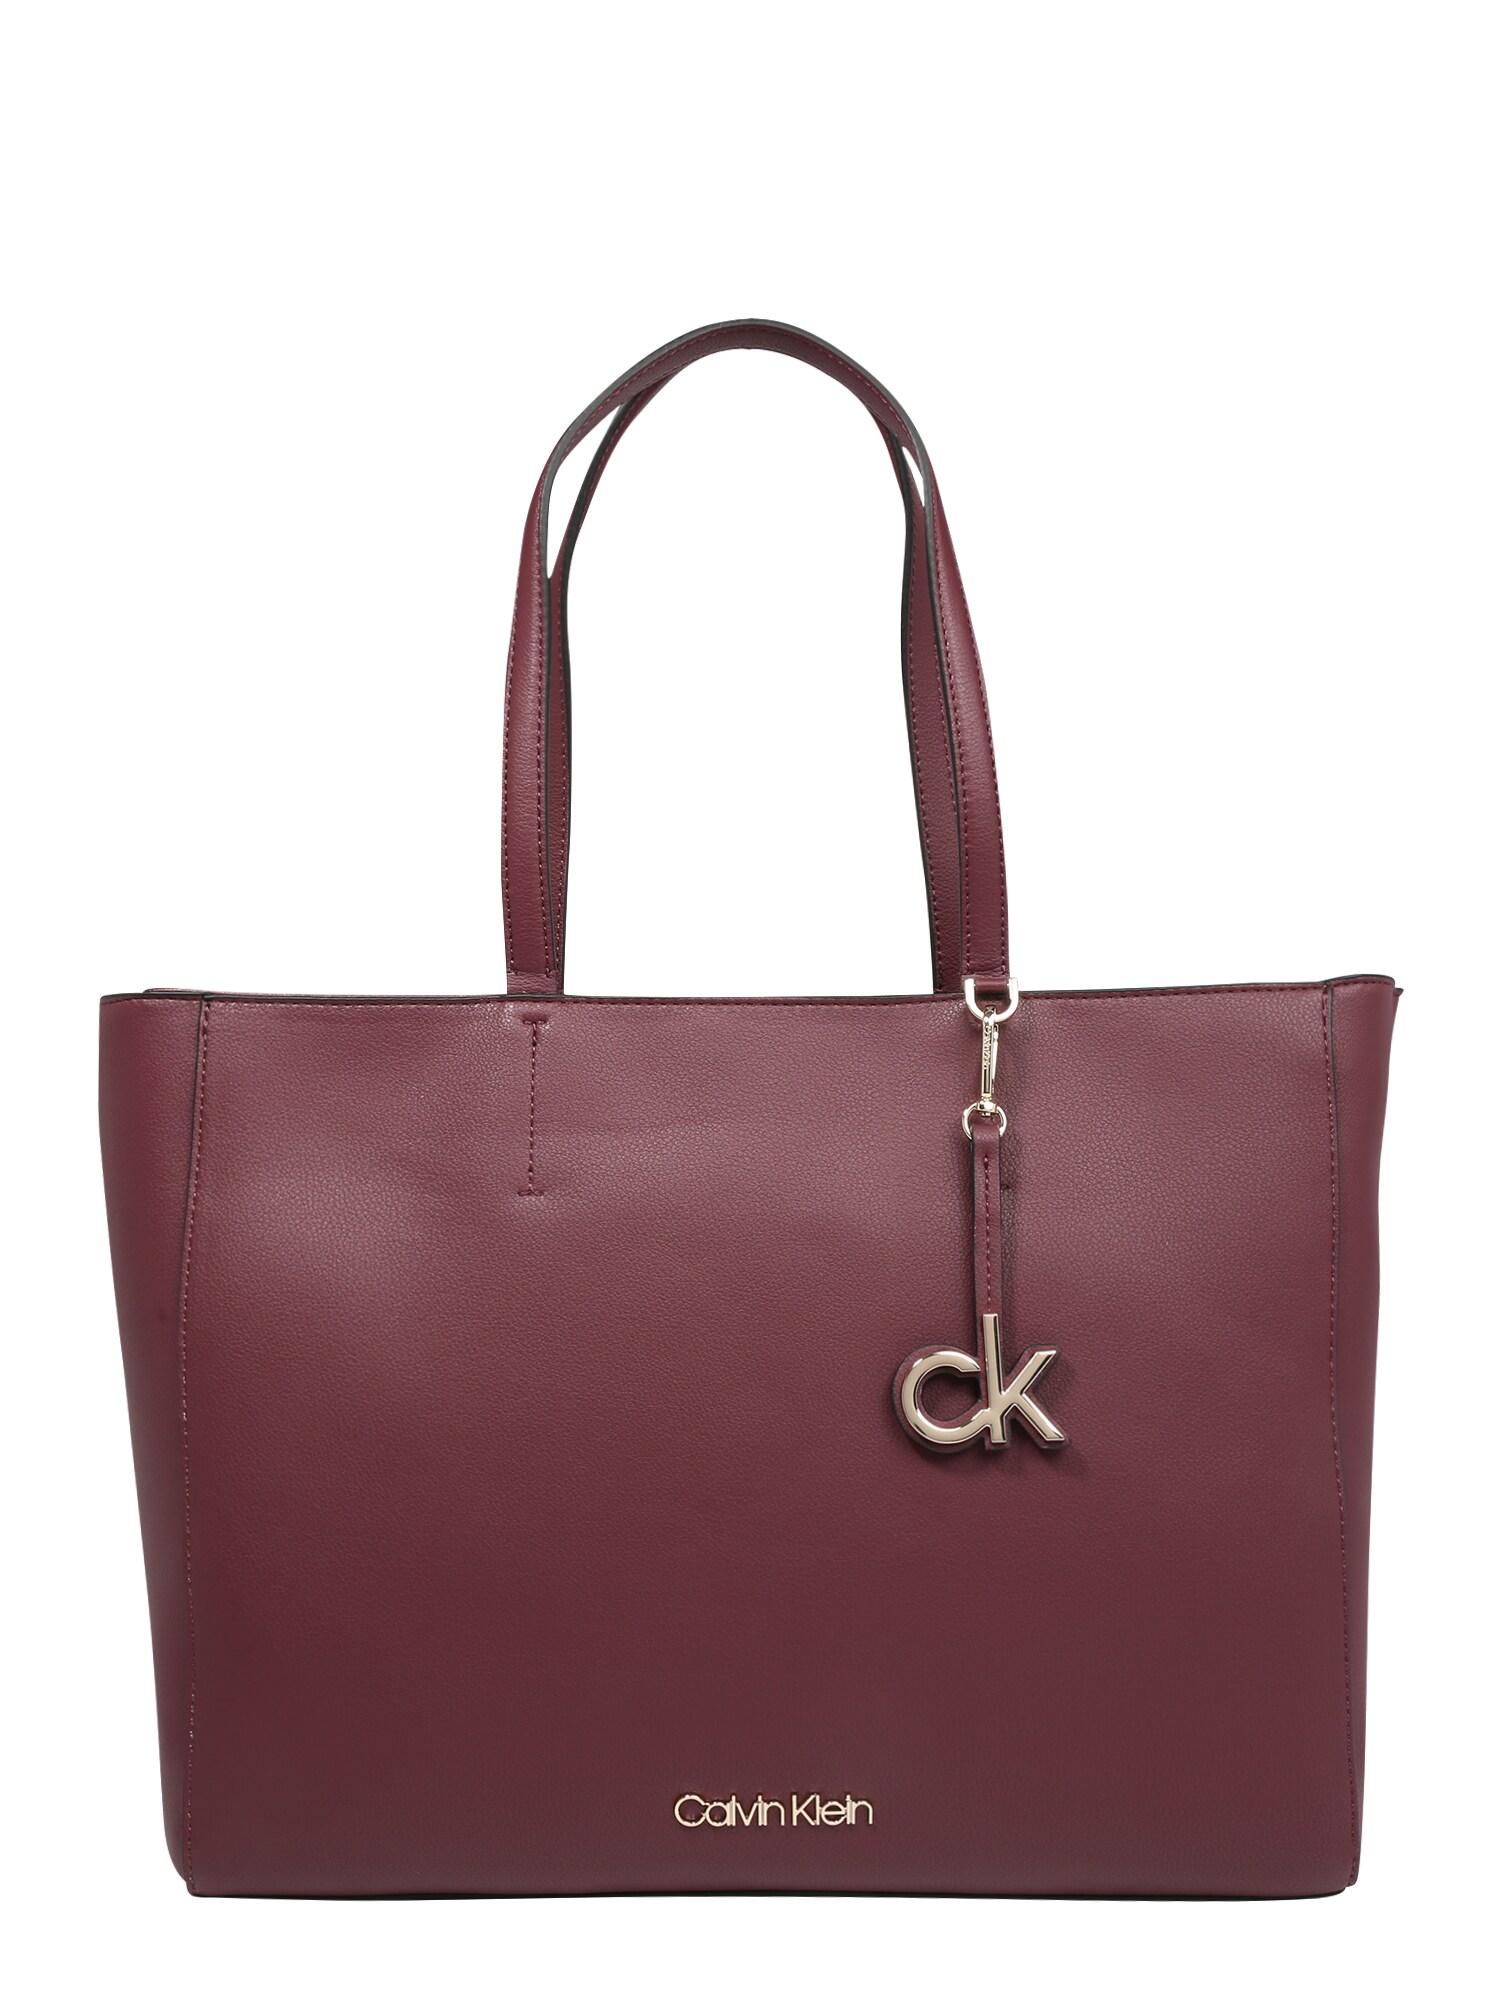 Calvin Klein Pirkinių krepšys  vyno raudona spalva